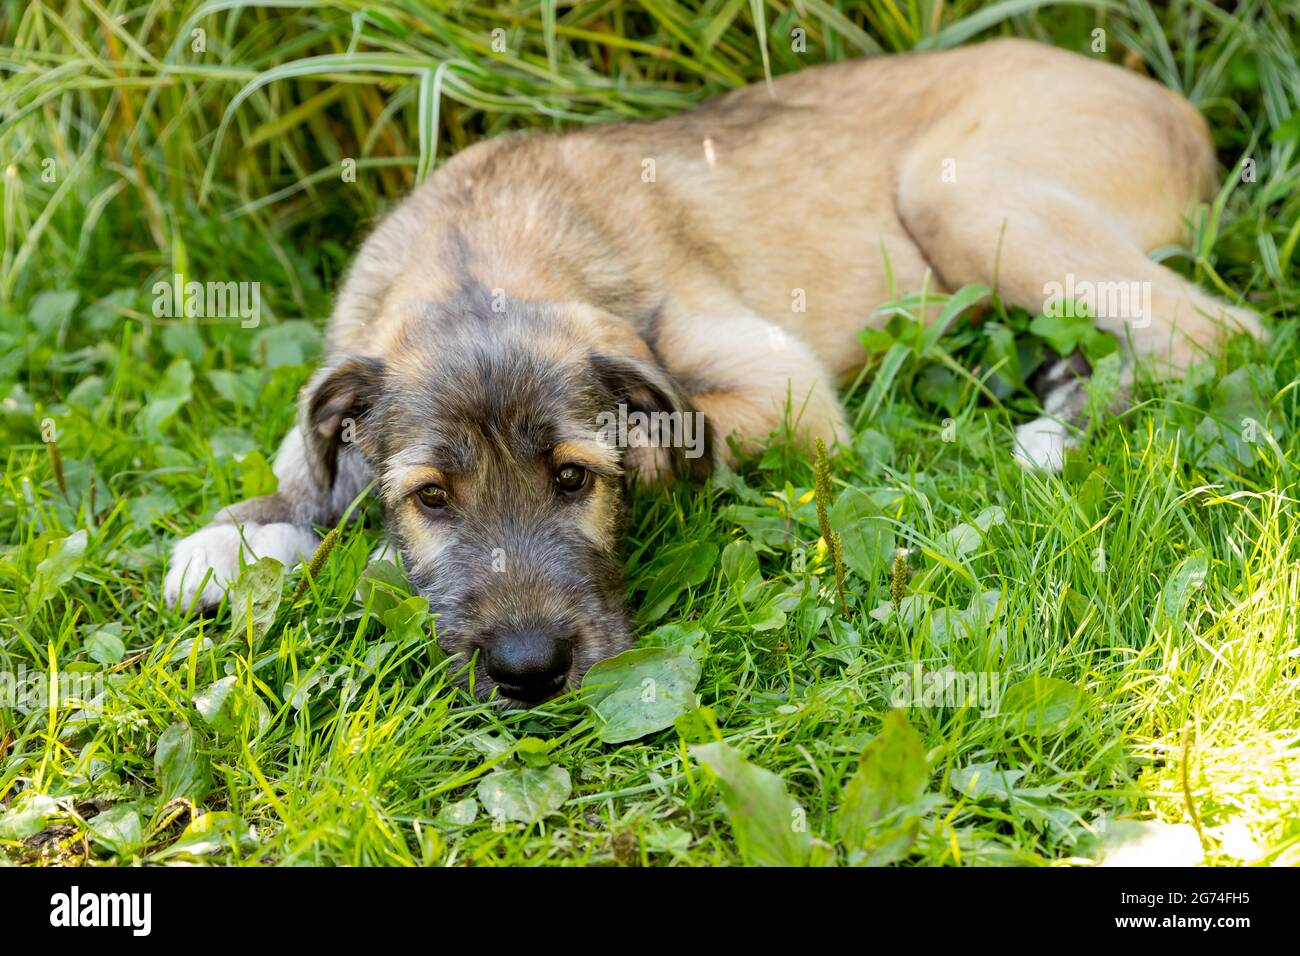 Drei Monate alter irischer Wolfhound im Garten.der Welpe der Rasse Irish Wolfhound ruht auf einem grünen Gras im Hof. Stockfoto